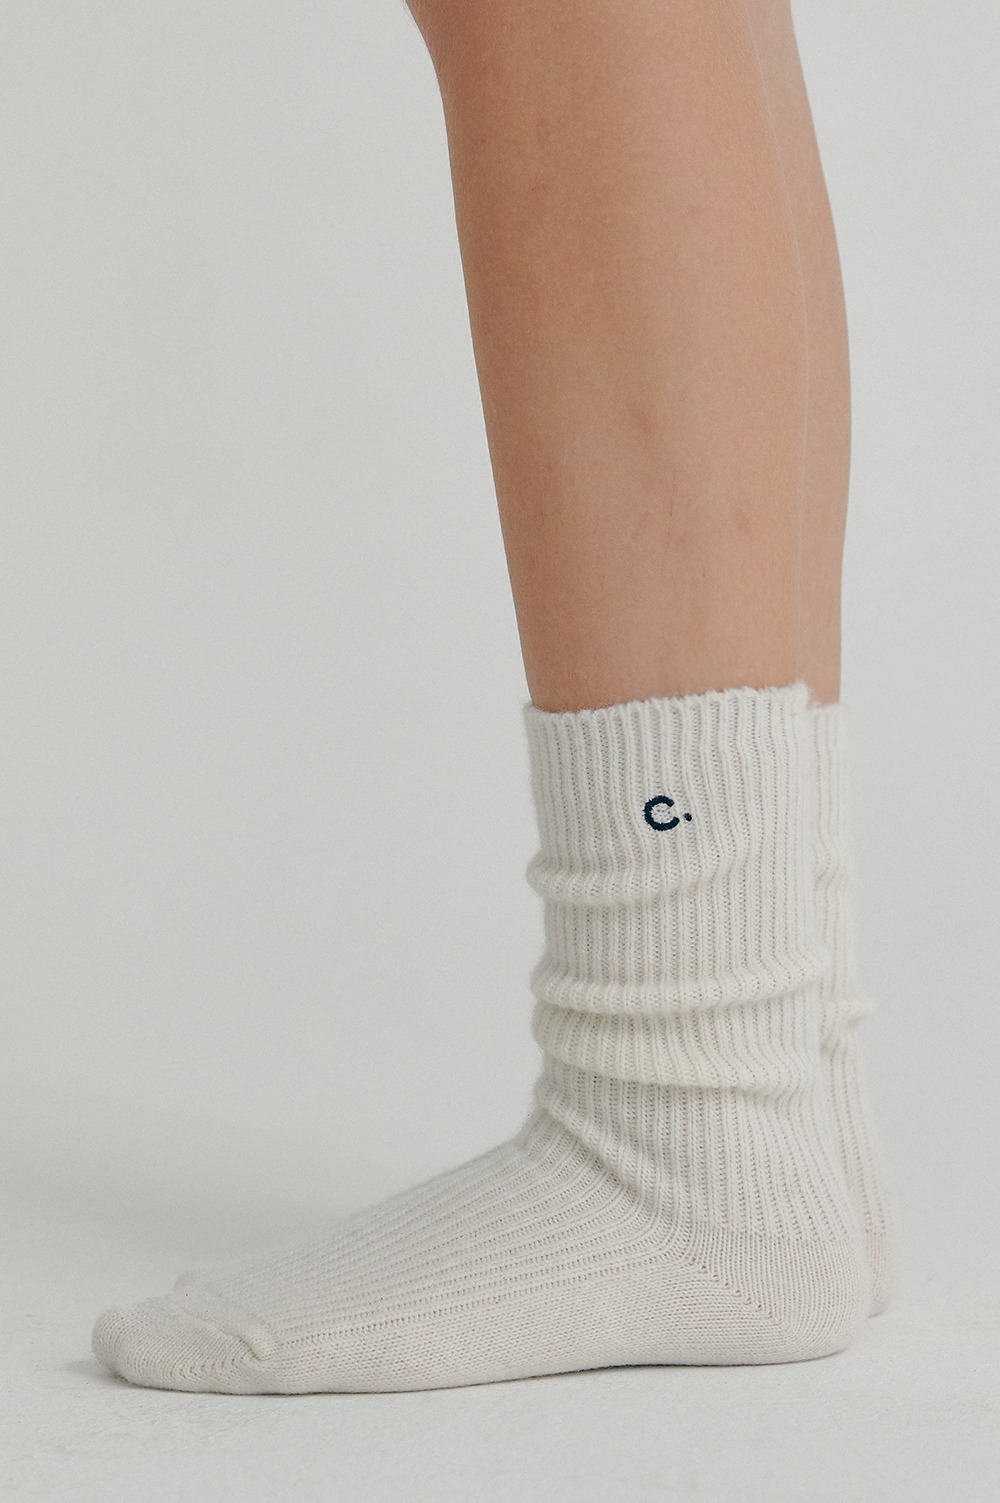 clove - [22FW clove] Cashmere Blended Socks (Ivory)